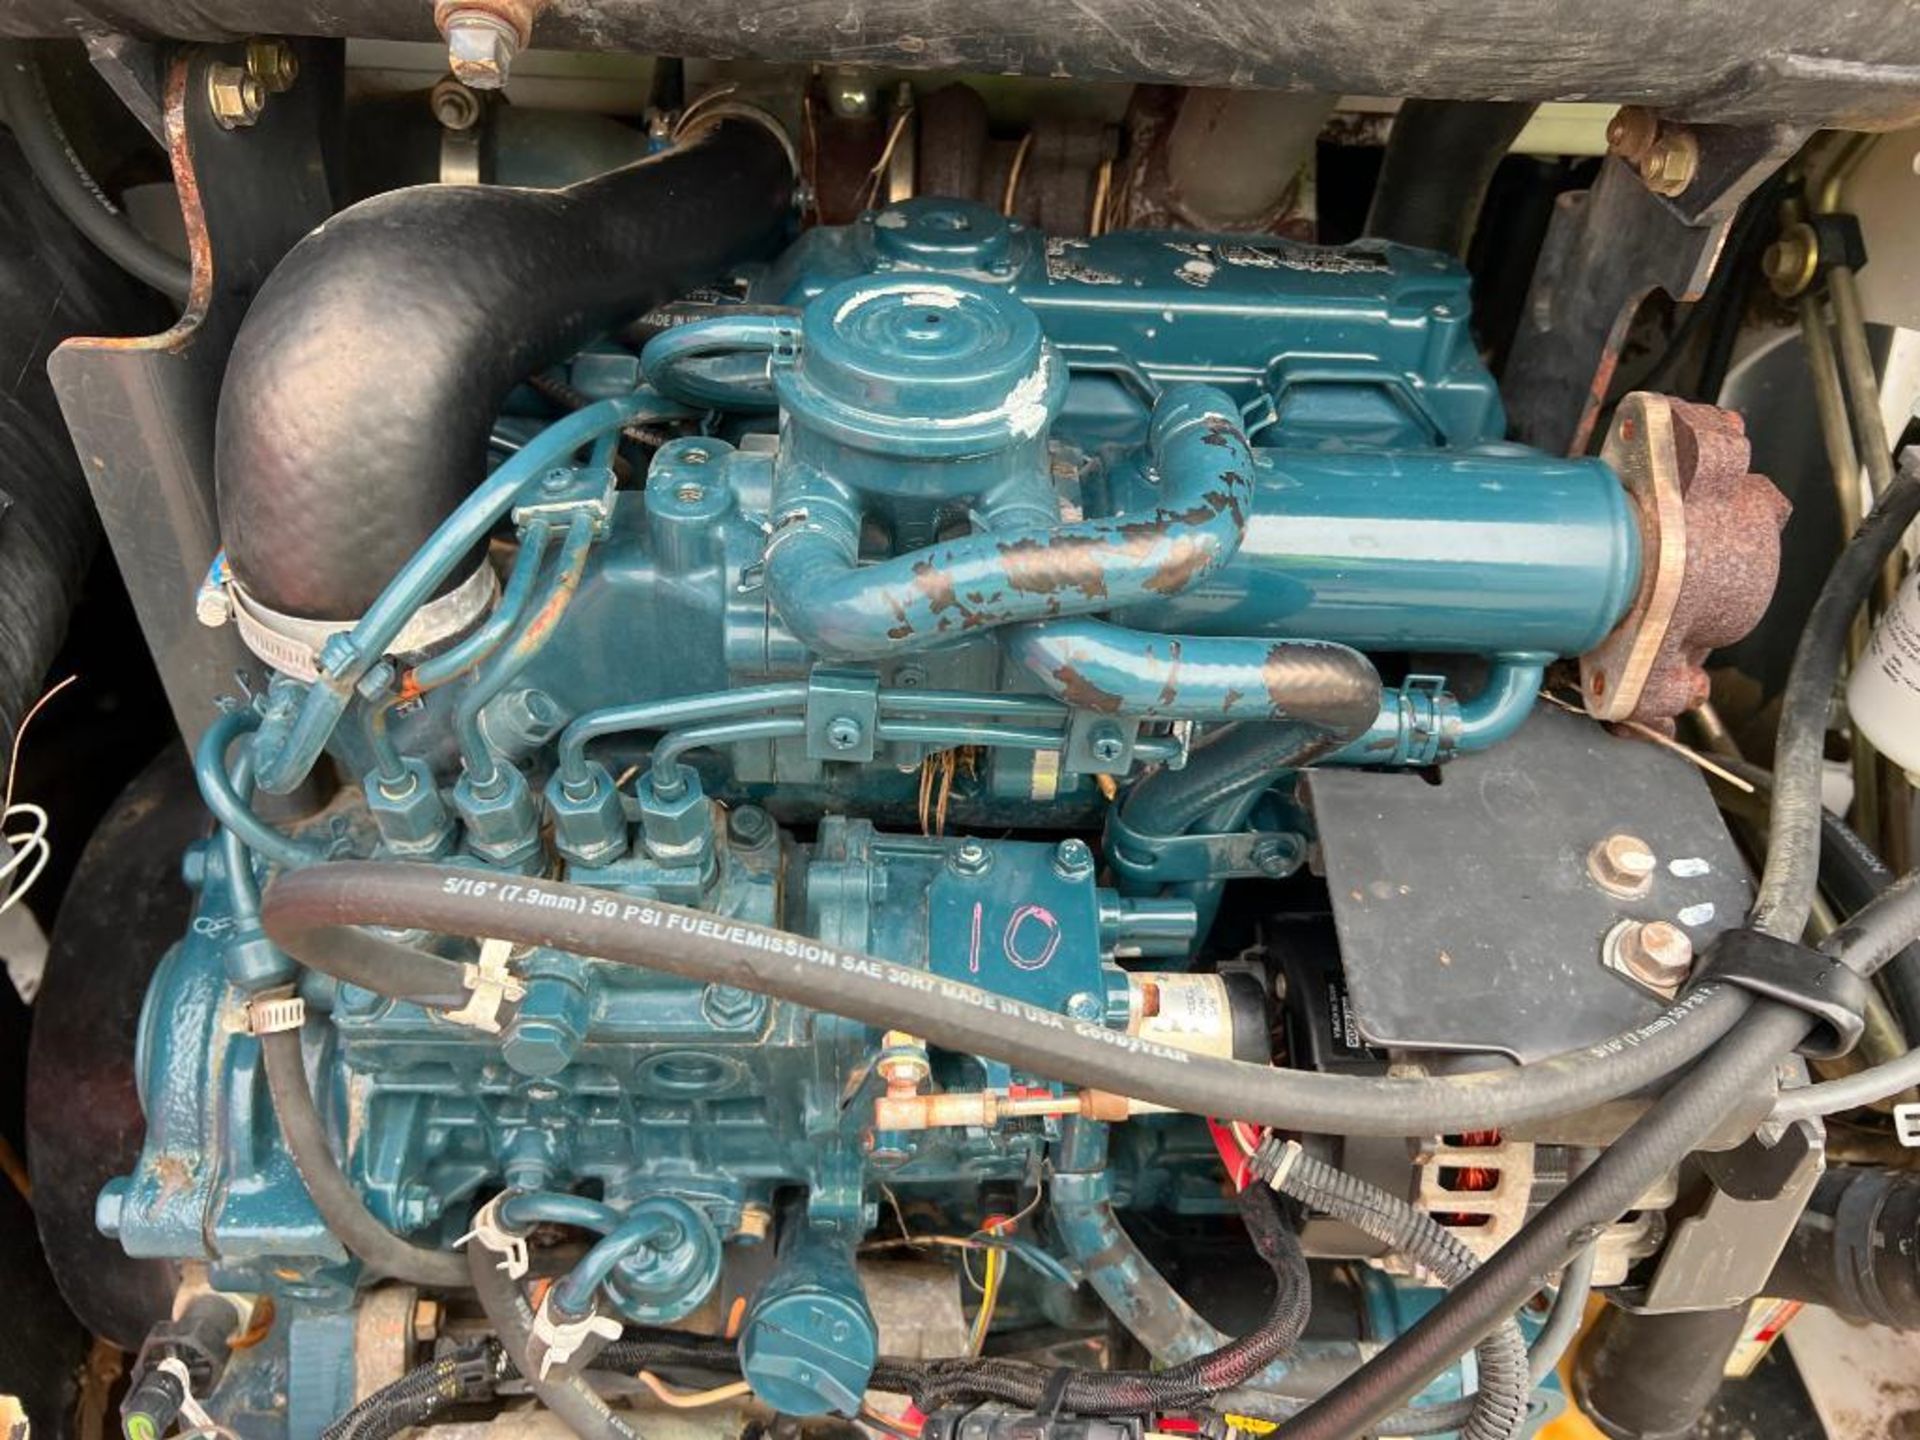 2013 Bobcat S570 Compact Skid Steer, Hours 2774, Serial #A7U712935, 68" Bucket, Turbo Diesel Engine, - Image 16 of 17